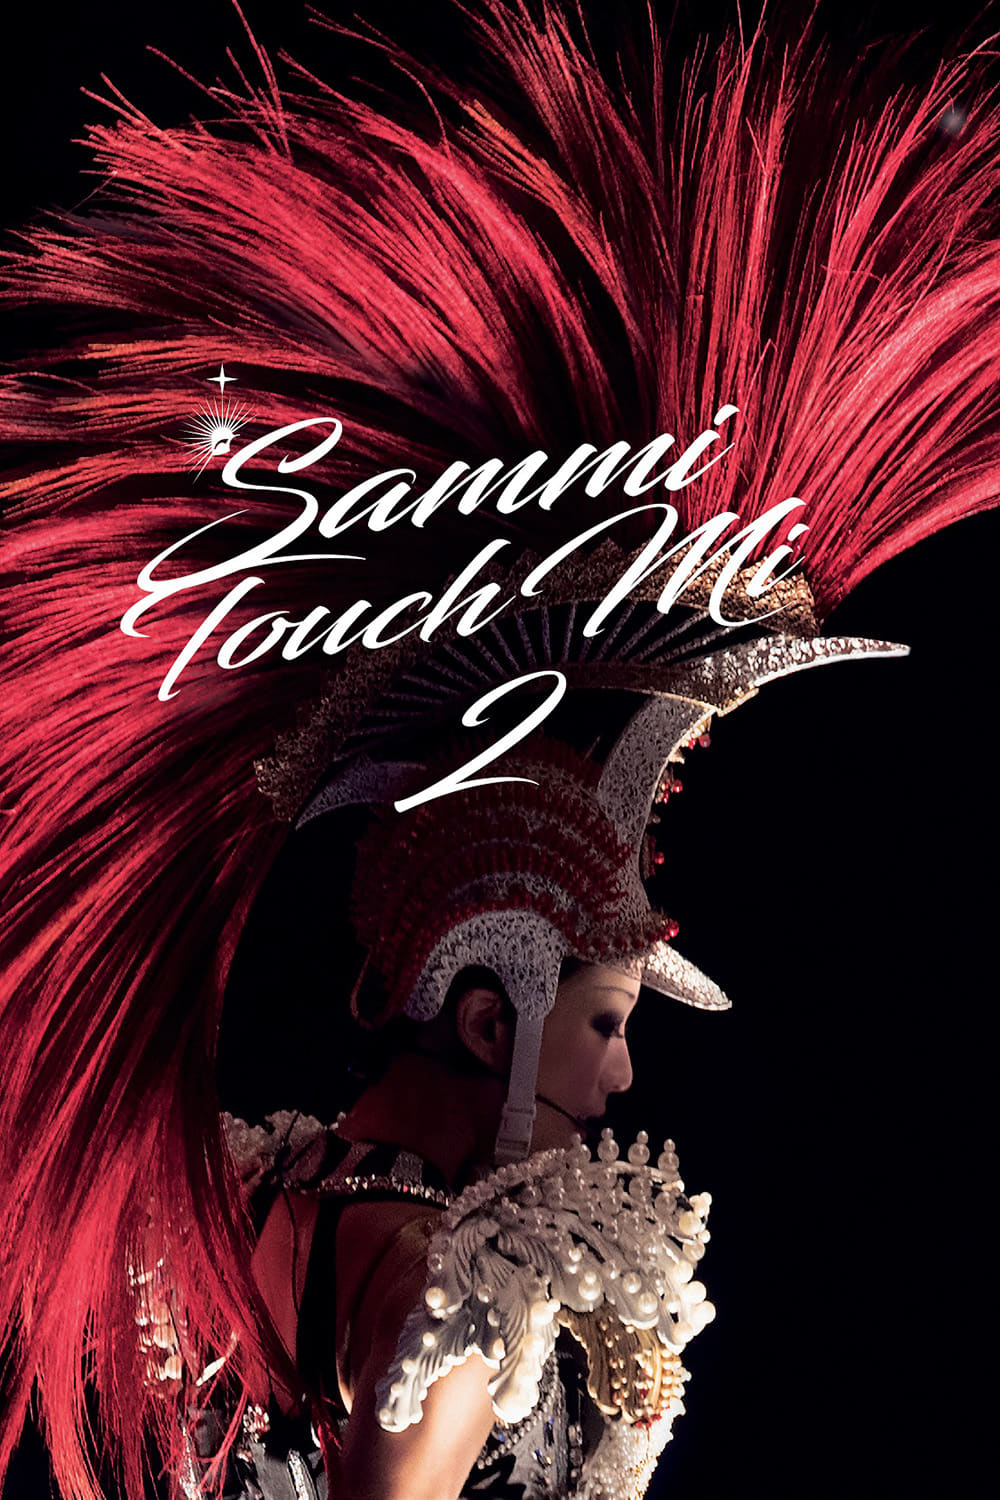 鄭秀文 Sammi Touch Mi 2 Live 2016 香港紅館演唱會